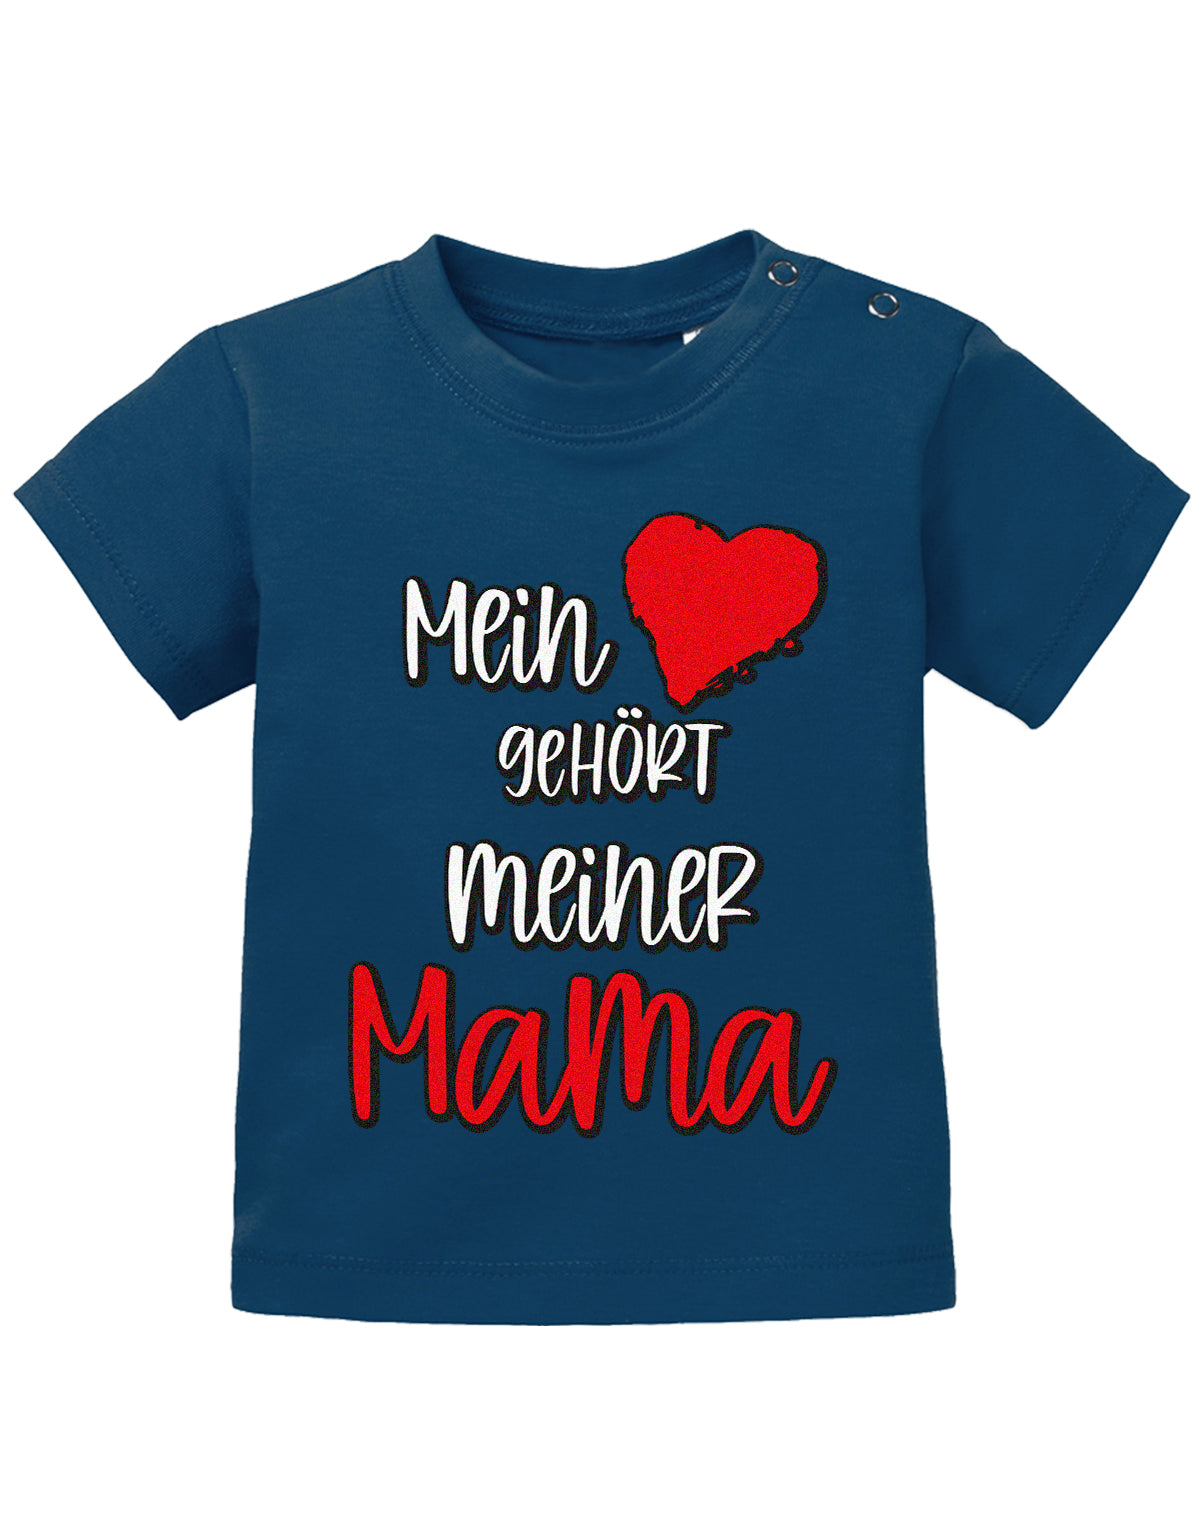 Mama Spruch Baby Shirt. Mein Herz gehört meiner Mama. Navy